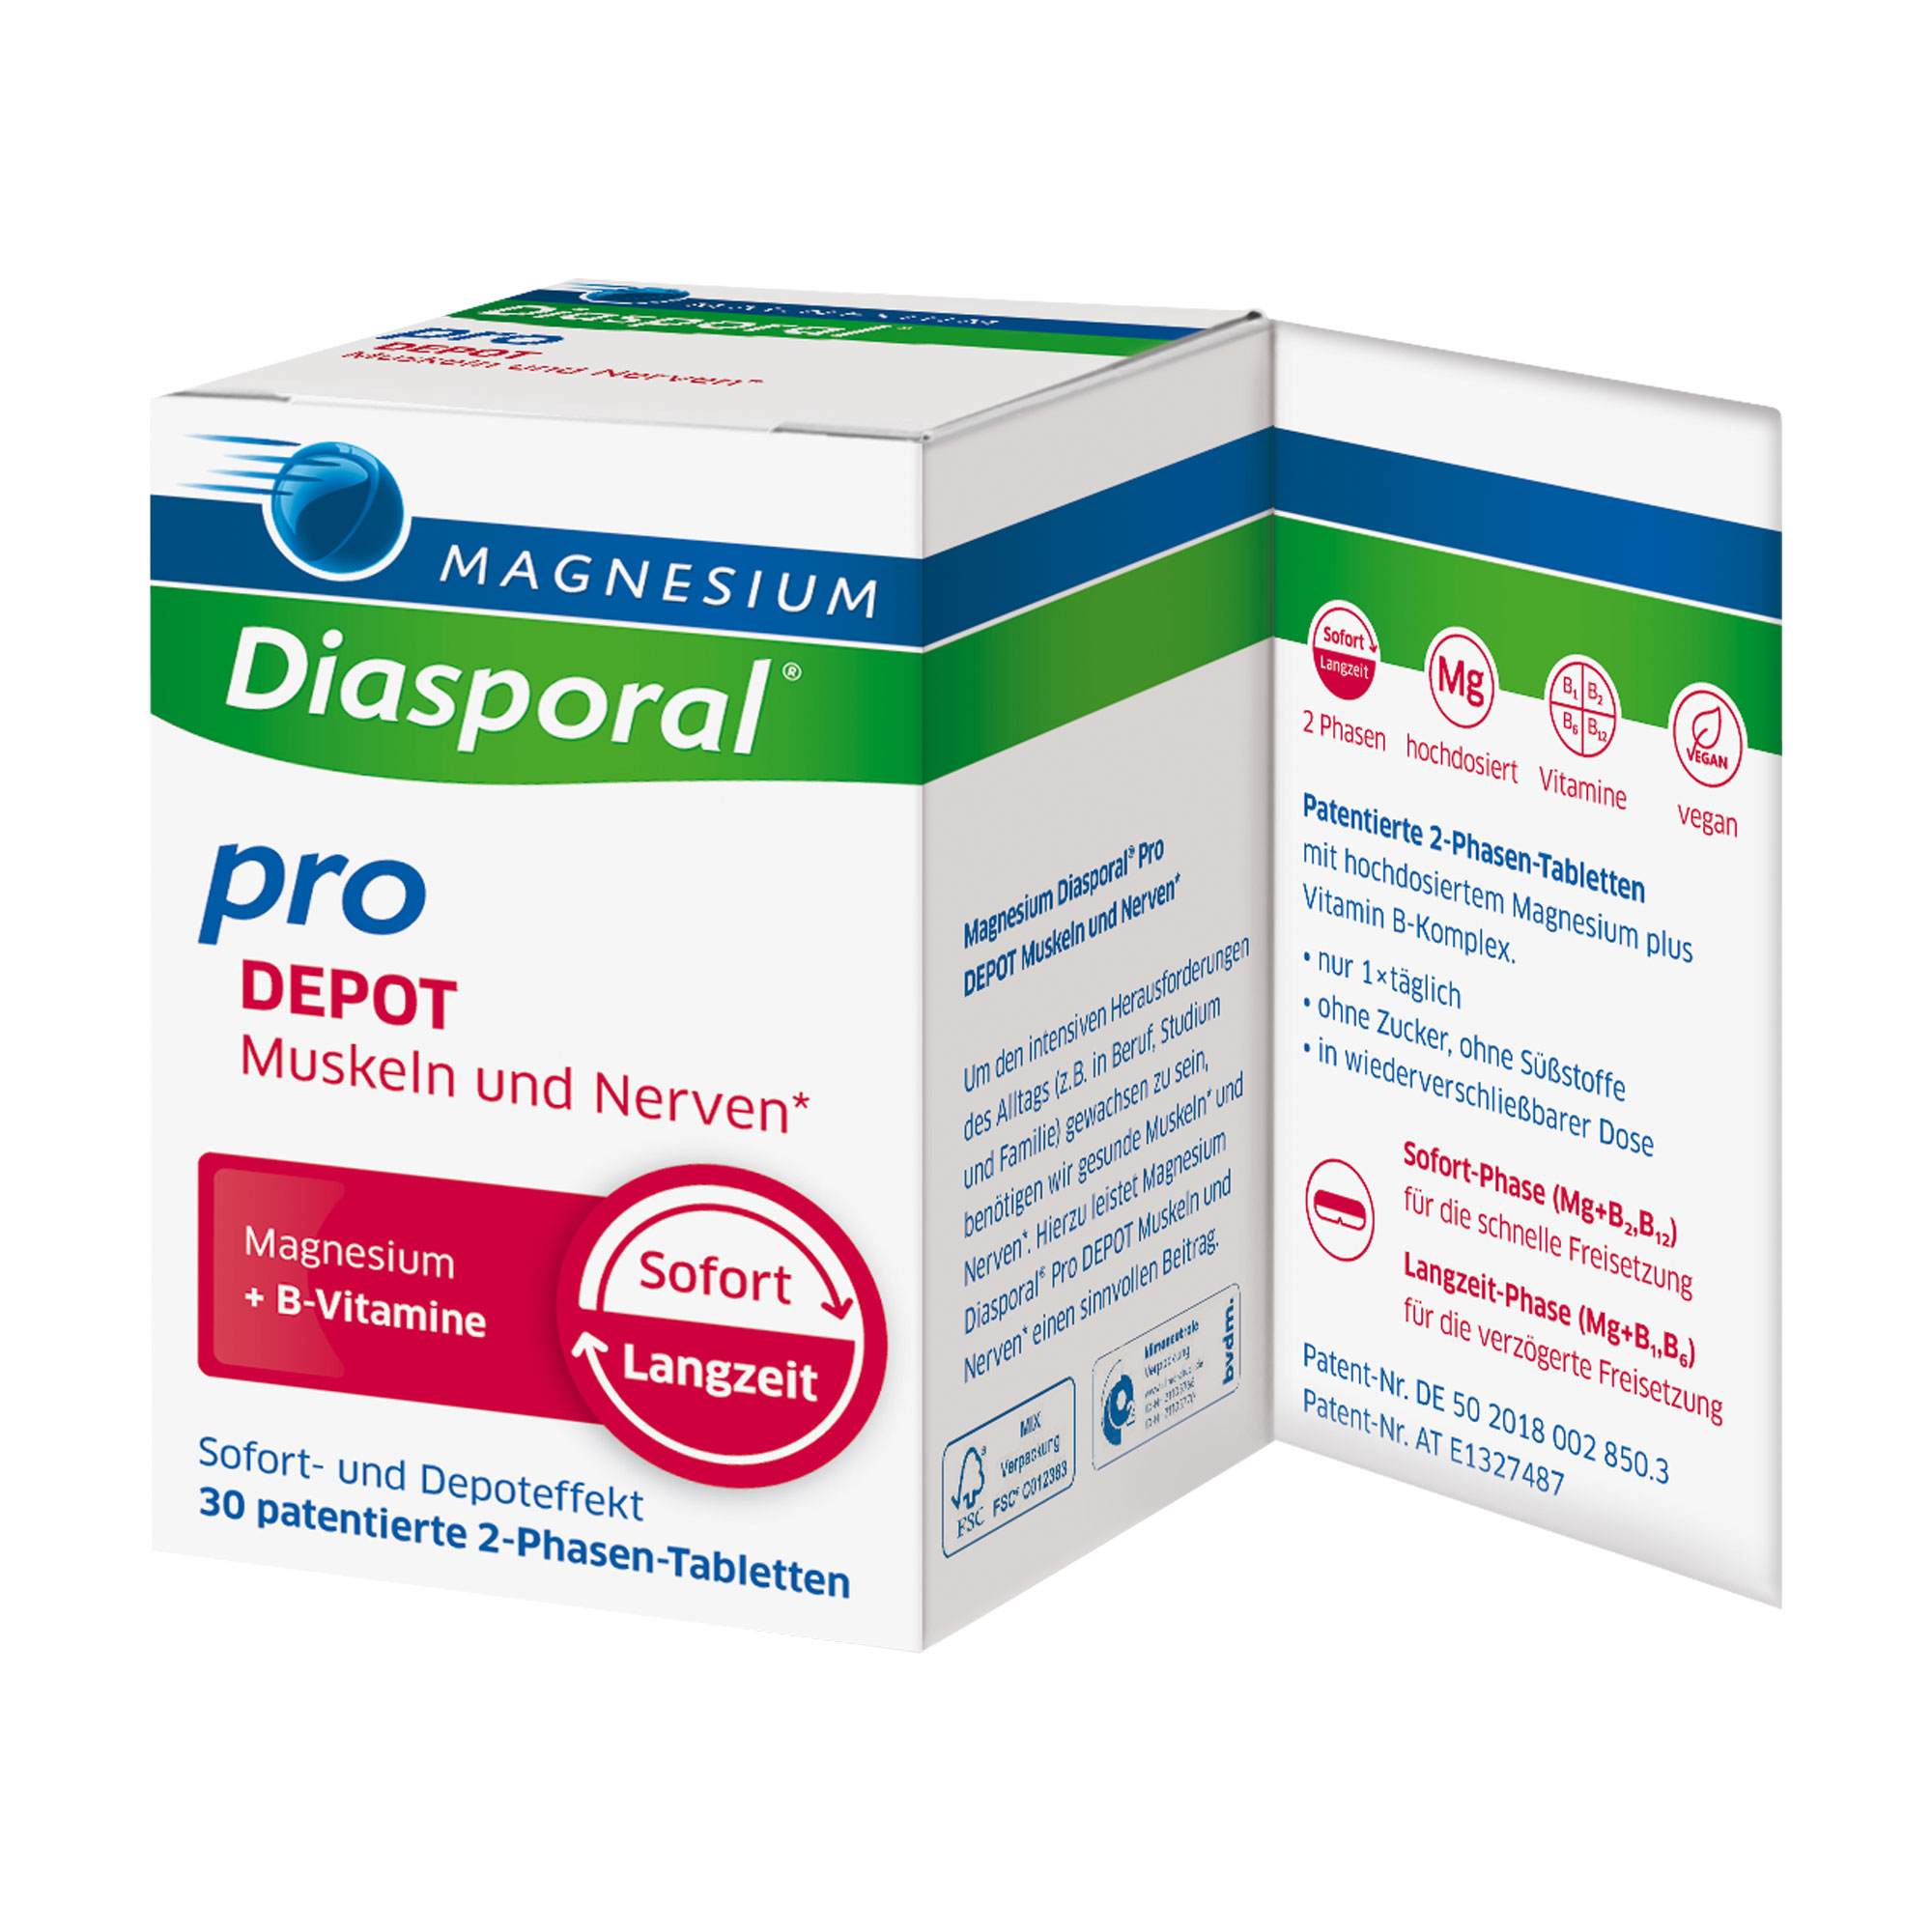 Magnesium-Diasporal pro DEPOT-Tabletten Muskeln und Nerven